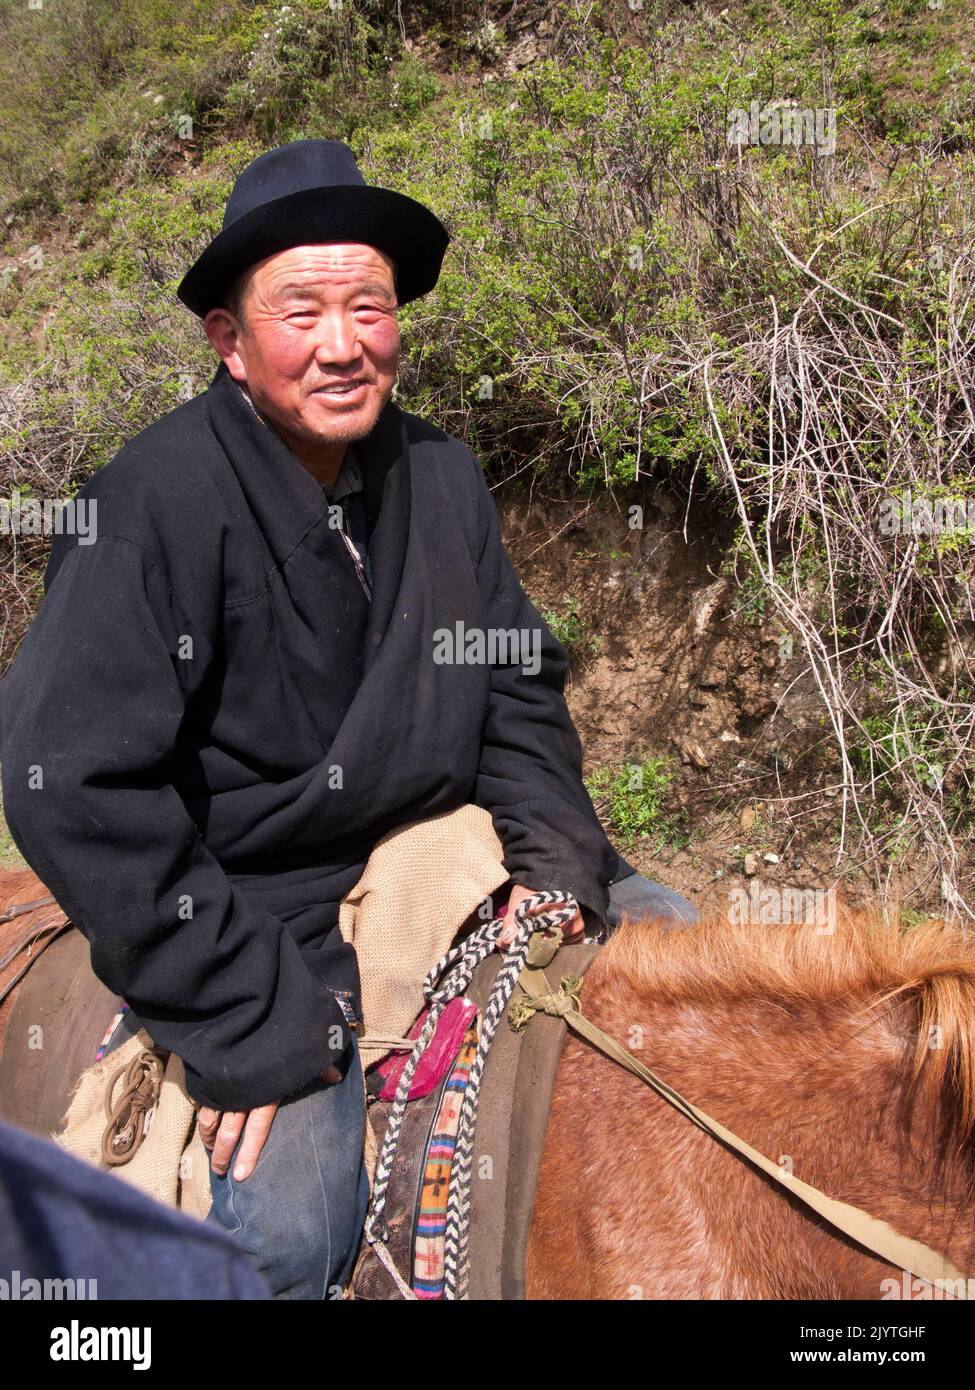 Escursione a cavallo su un pony per turisti occidentali ed europei, turisti e visitatori dati da cavaliere tibetano / uomo / etnie del Tibet, residenti o locali all'antica città cinese murata di Songpan, nella provincia settentrionale del Sichuan, Cina. (126) Foto Stock